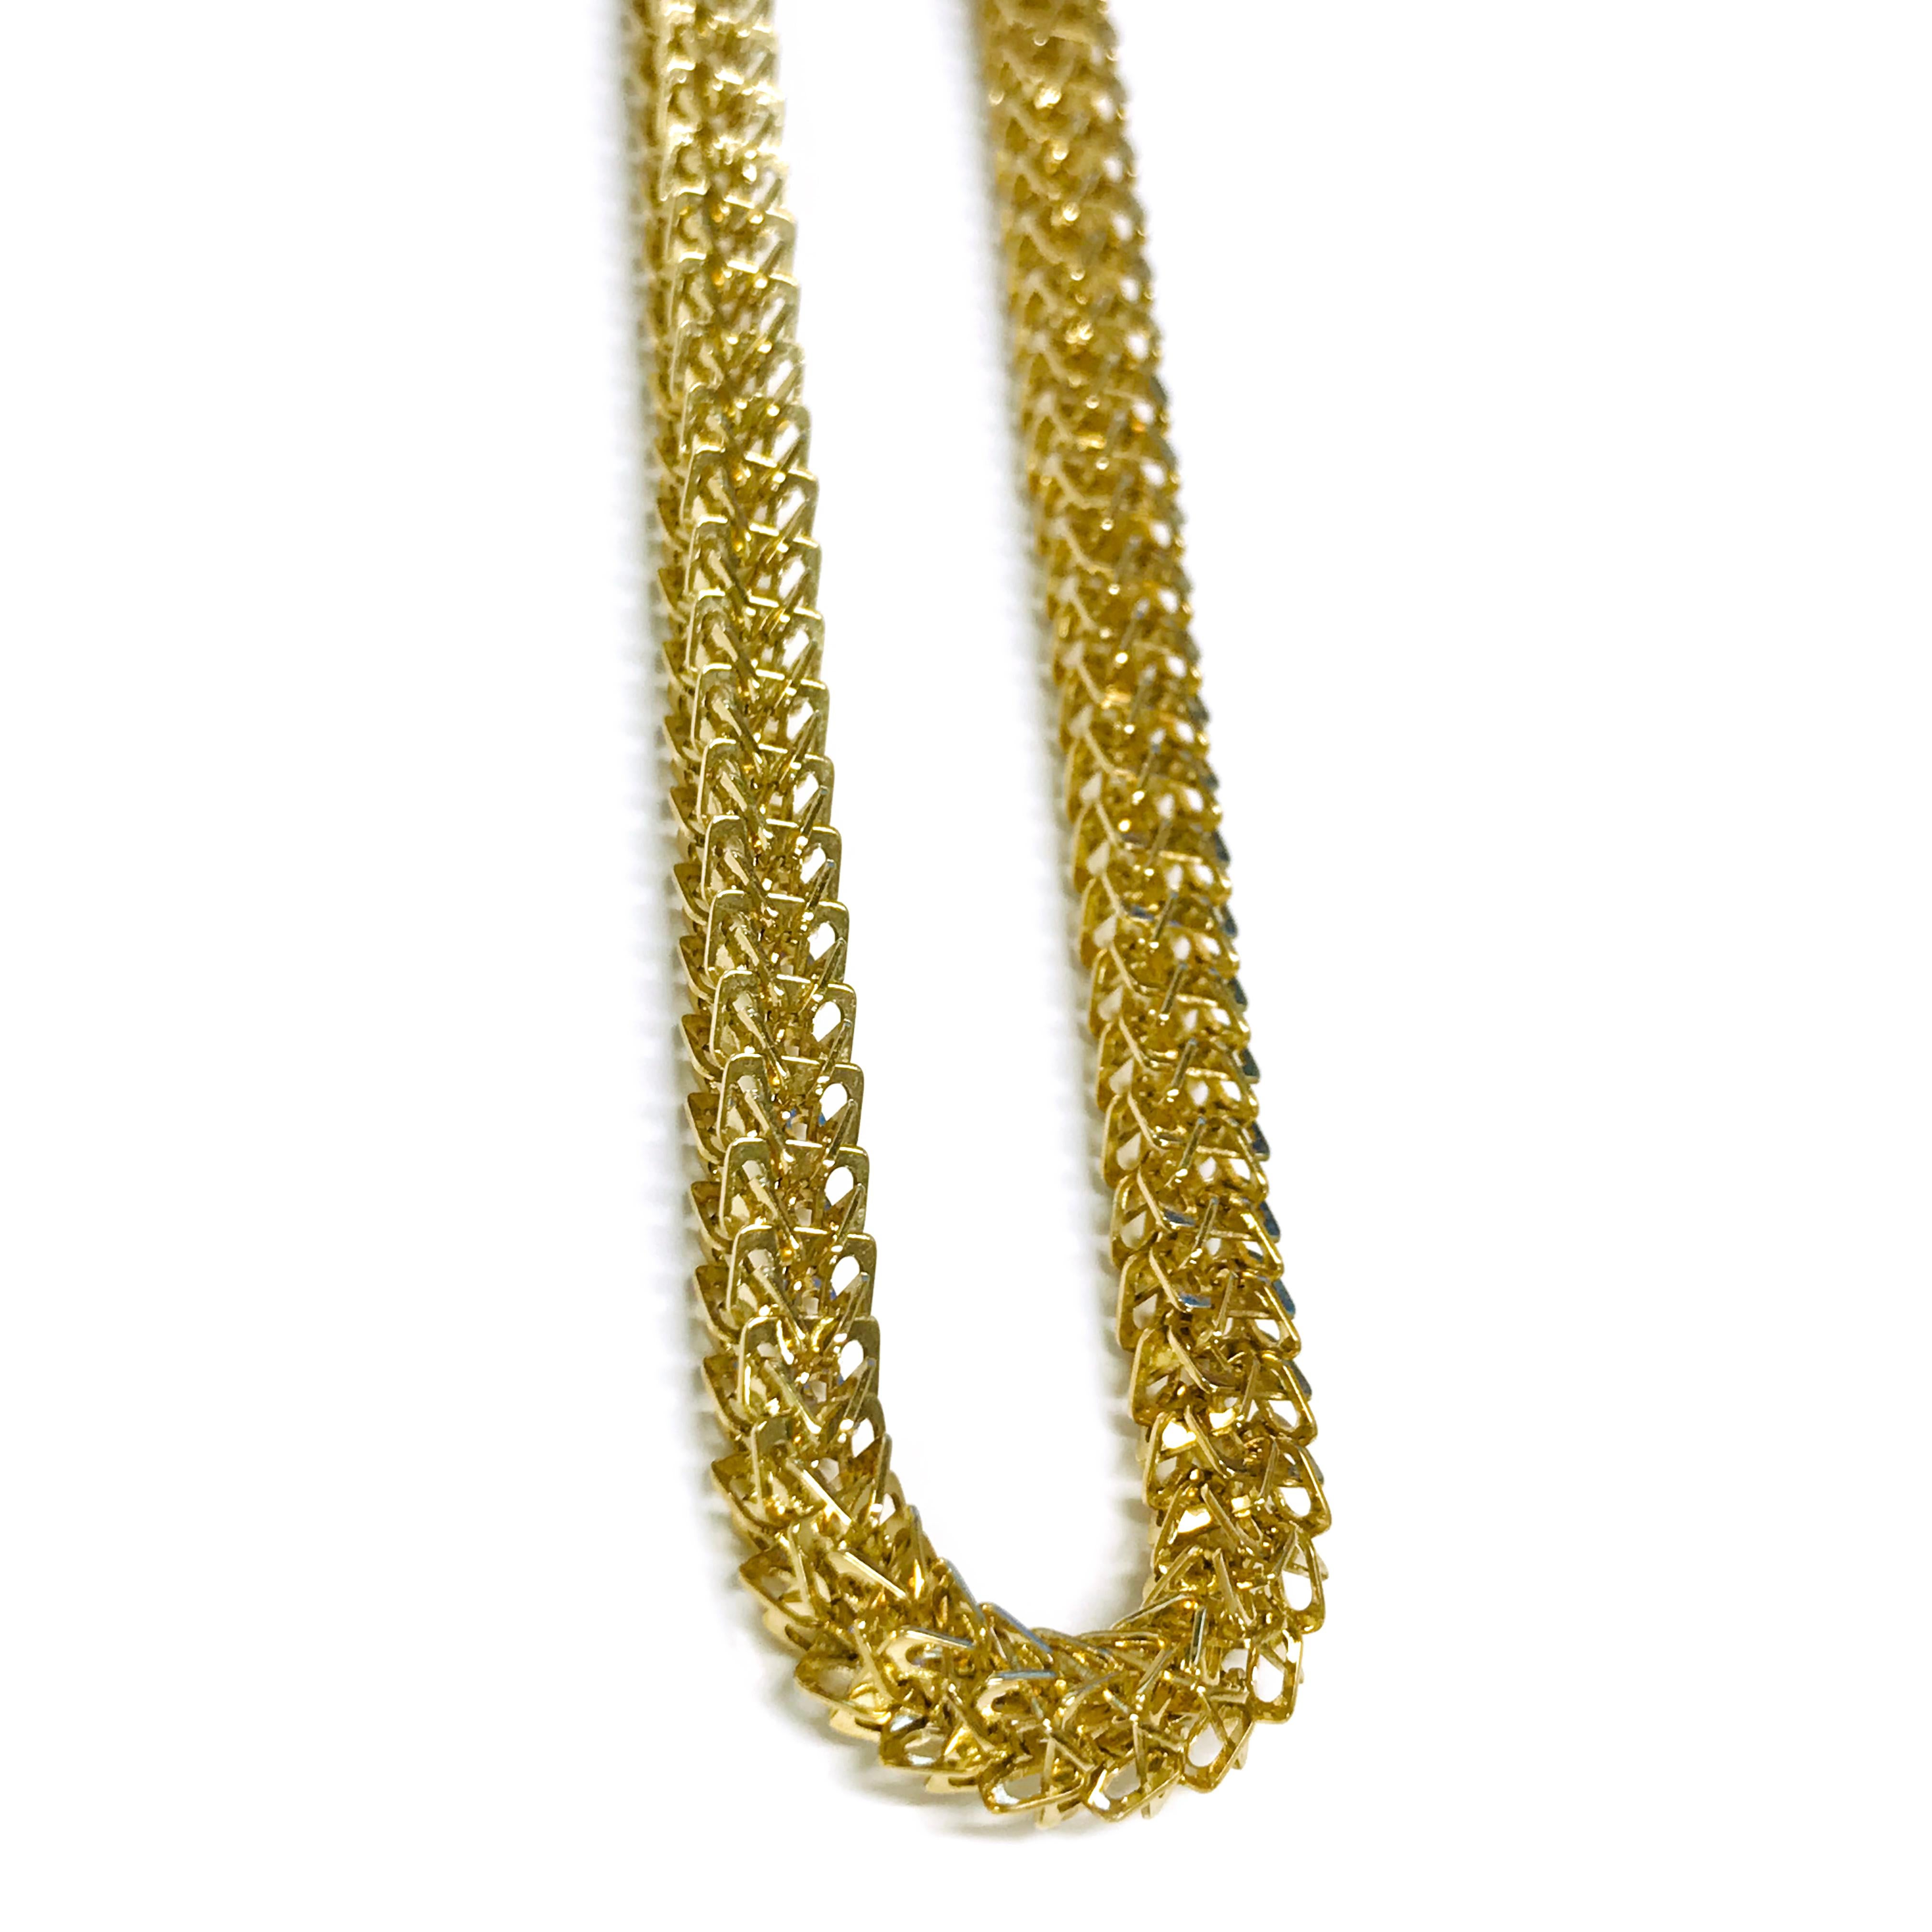 Collier ras du cou Galaxy Link en or 14 carats. La largeur du collier est de 4,5 mm. Le fermoir porte l'inscription Galaxy. Le poids total en or du collier est de 18,8 grammes et le collier mesure 16 pouces de long.